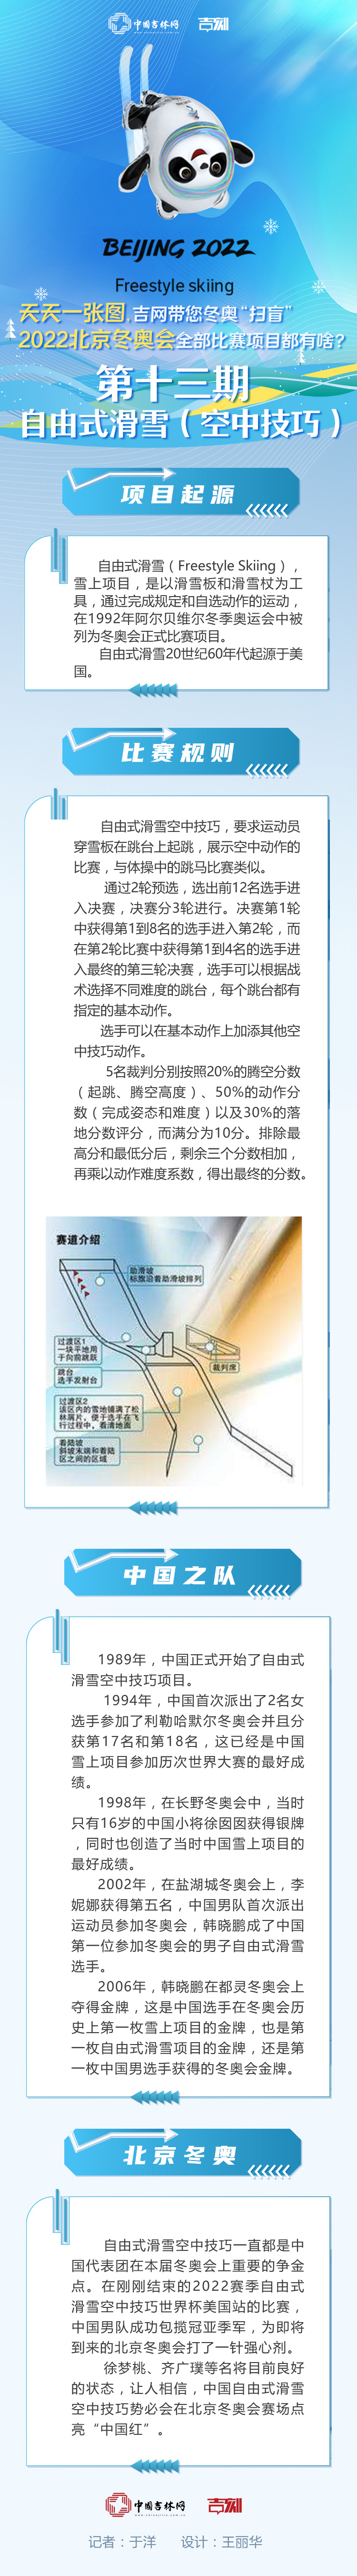 天天一张图， 吉网带您“扫盲”丨2022北京冬奥会比赛项目都有啥？第十三期 自由式滑雪（空中技巧）